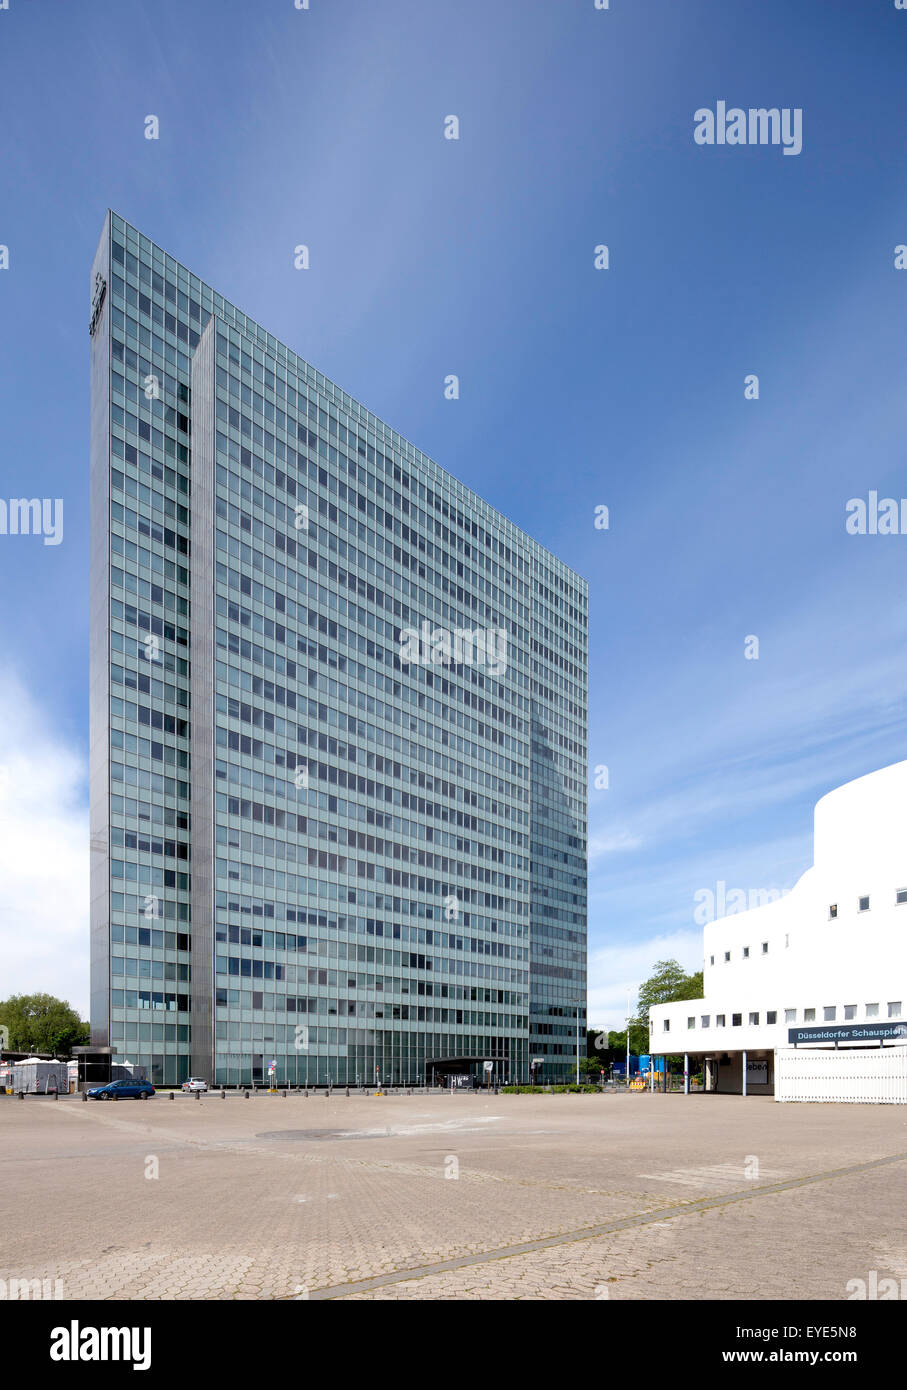 Dreischeibenhaus ou Thyssen building, office tower, Düsseldorf, Rhénanie du Nord-Westphalie, Allemagne, Banque D'Images